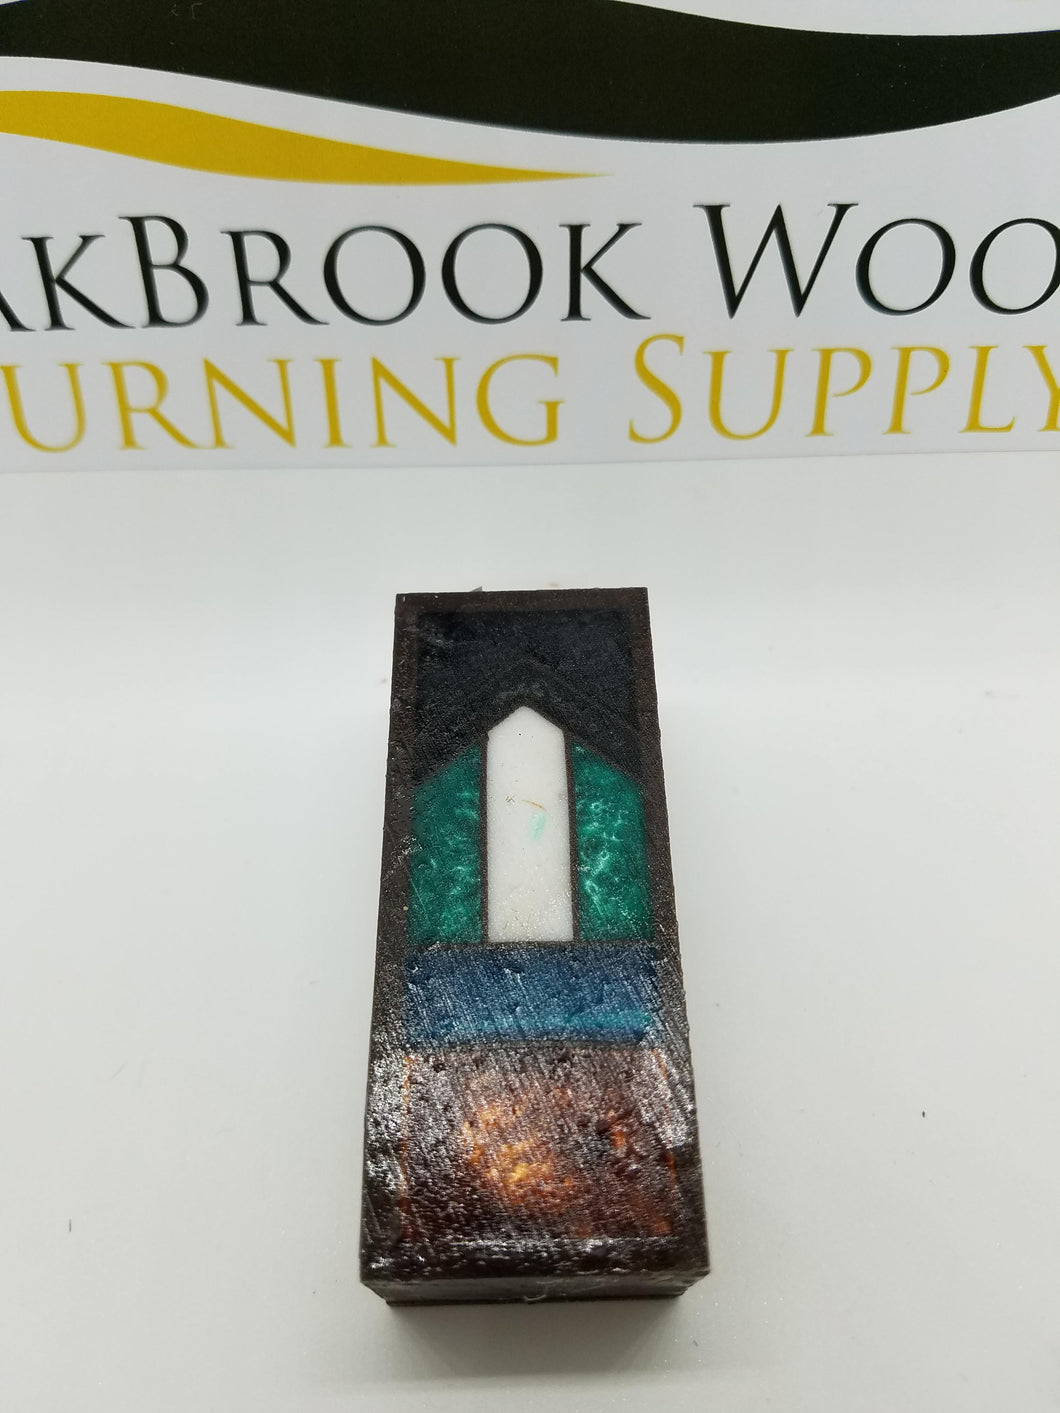 Gisi - Oakbrook Wood Turning Supply